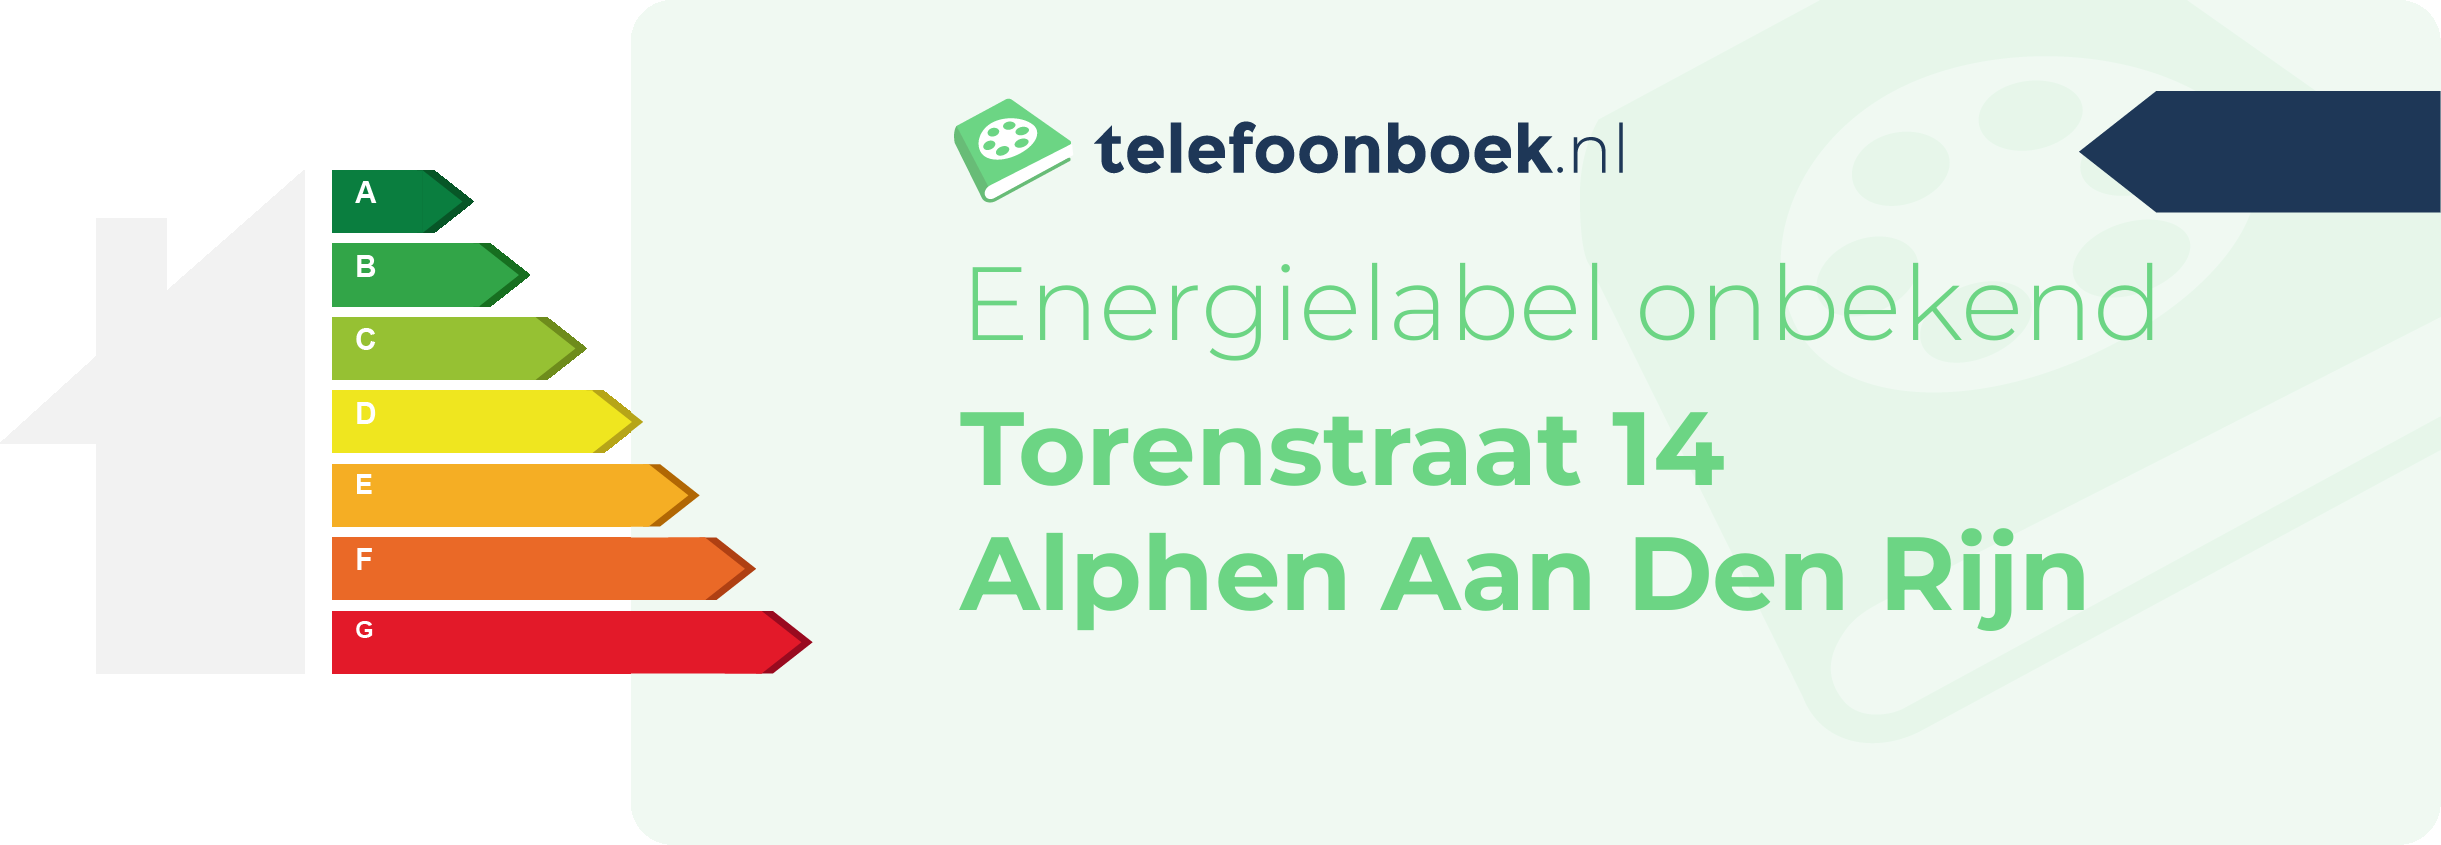 Energielabel Torenstraat 14 Alphen Aan Den Rijn